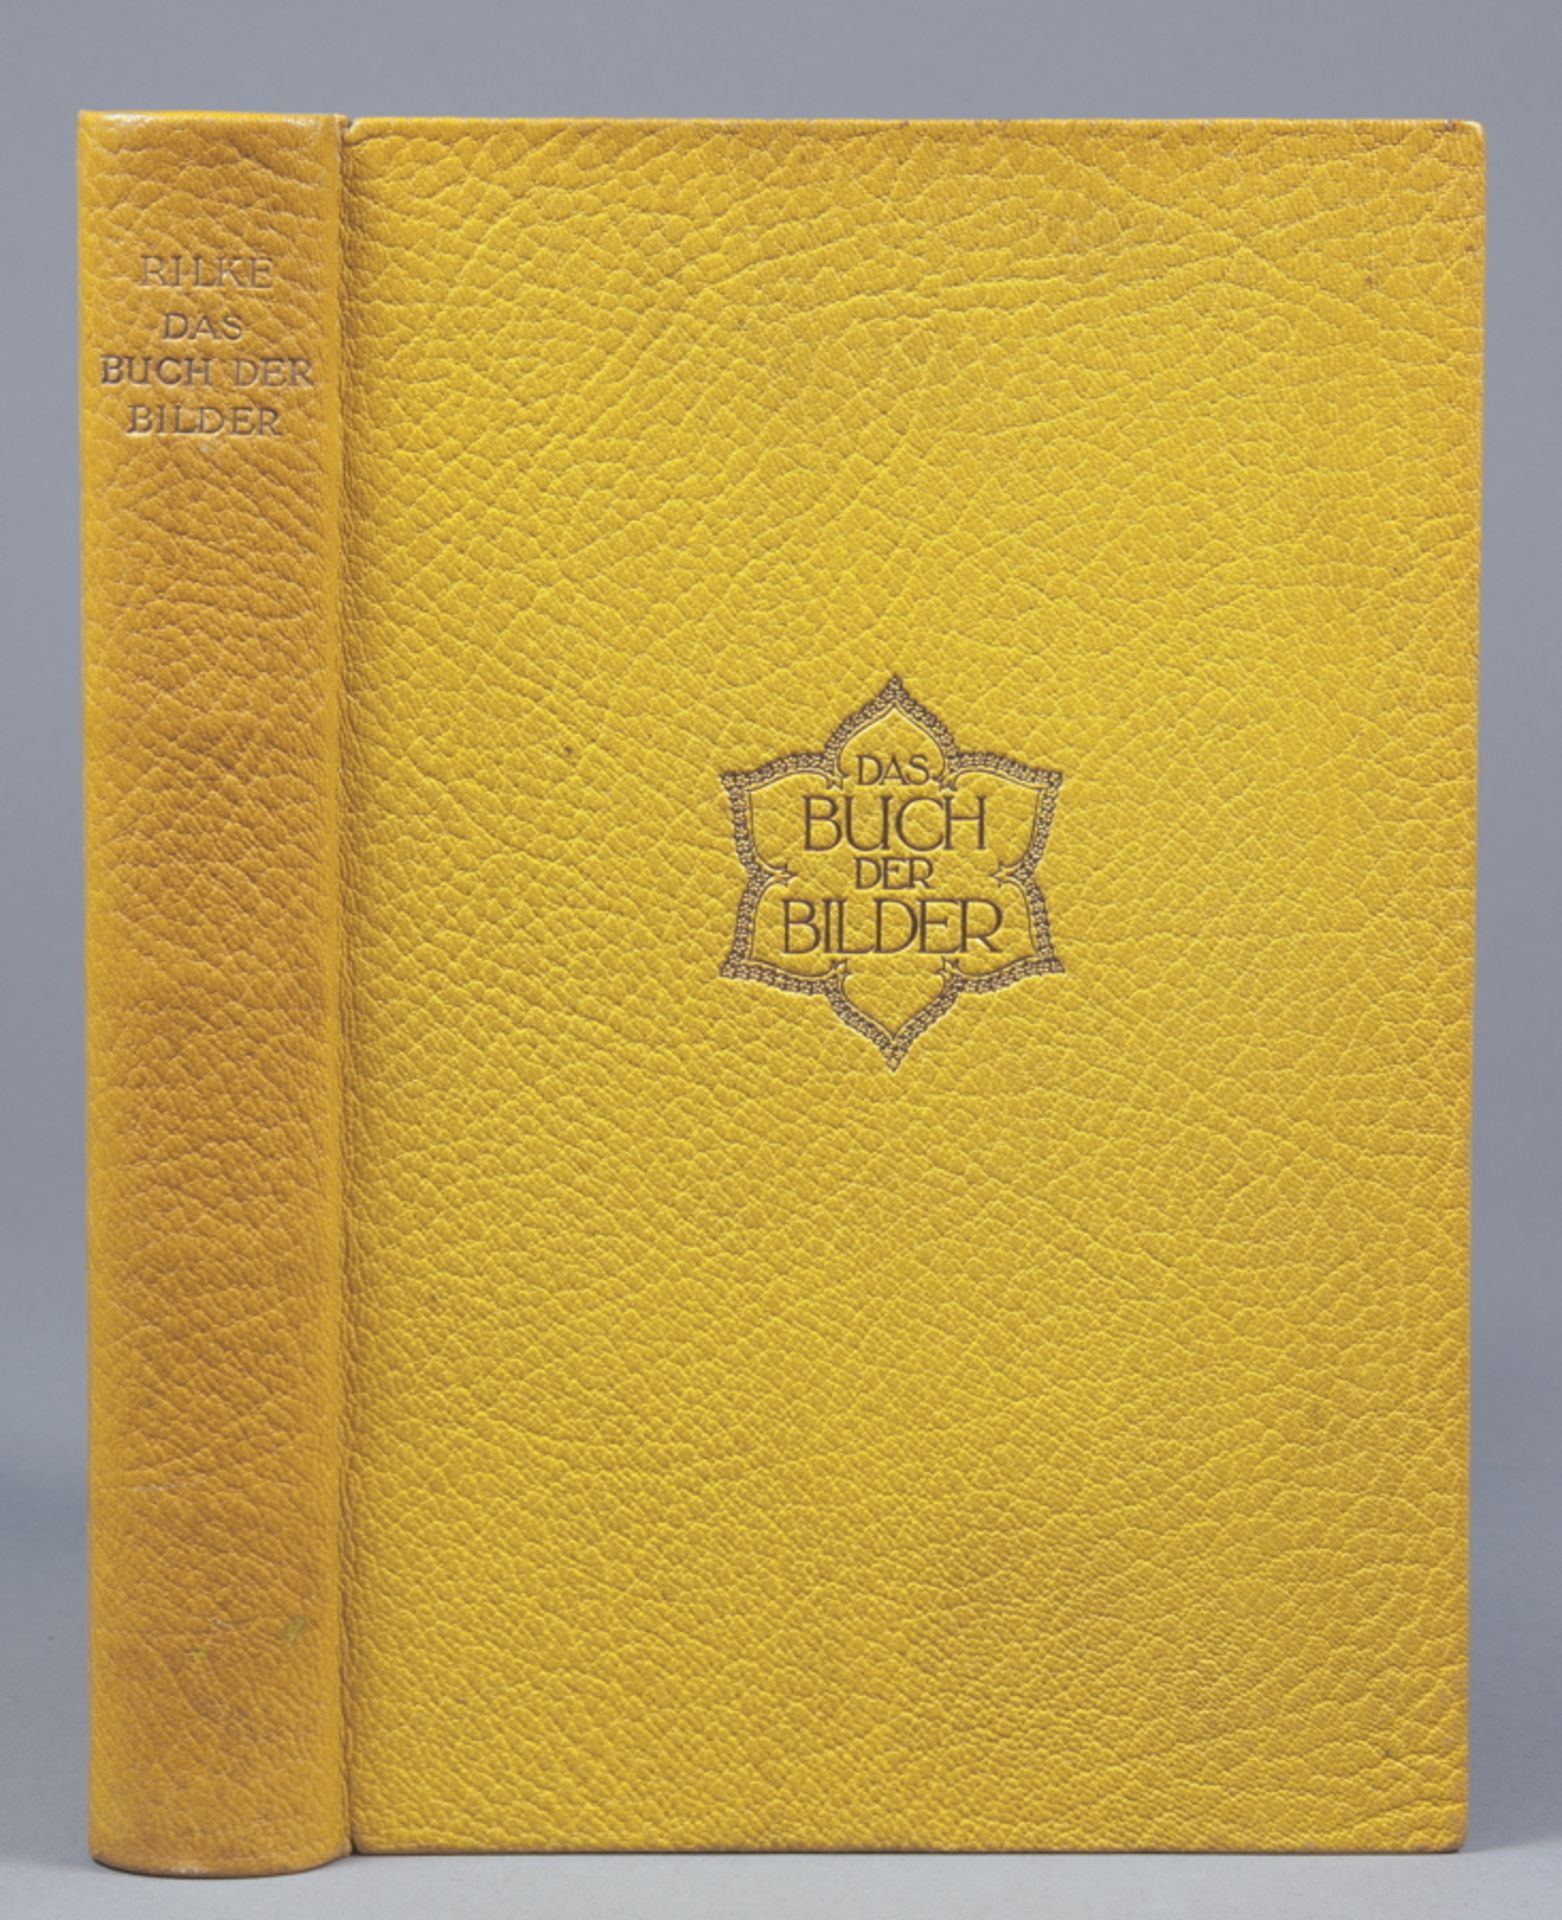 Ernst Ludwig-Presse - Rainer Maria Rilke. Das Buch der Bilder. Leipzig, Insel 1913. Gelber